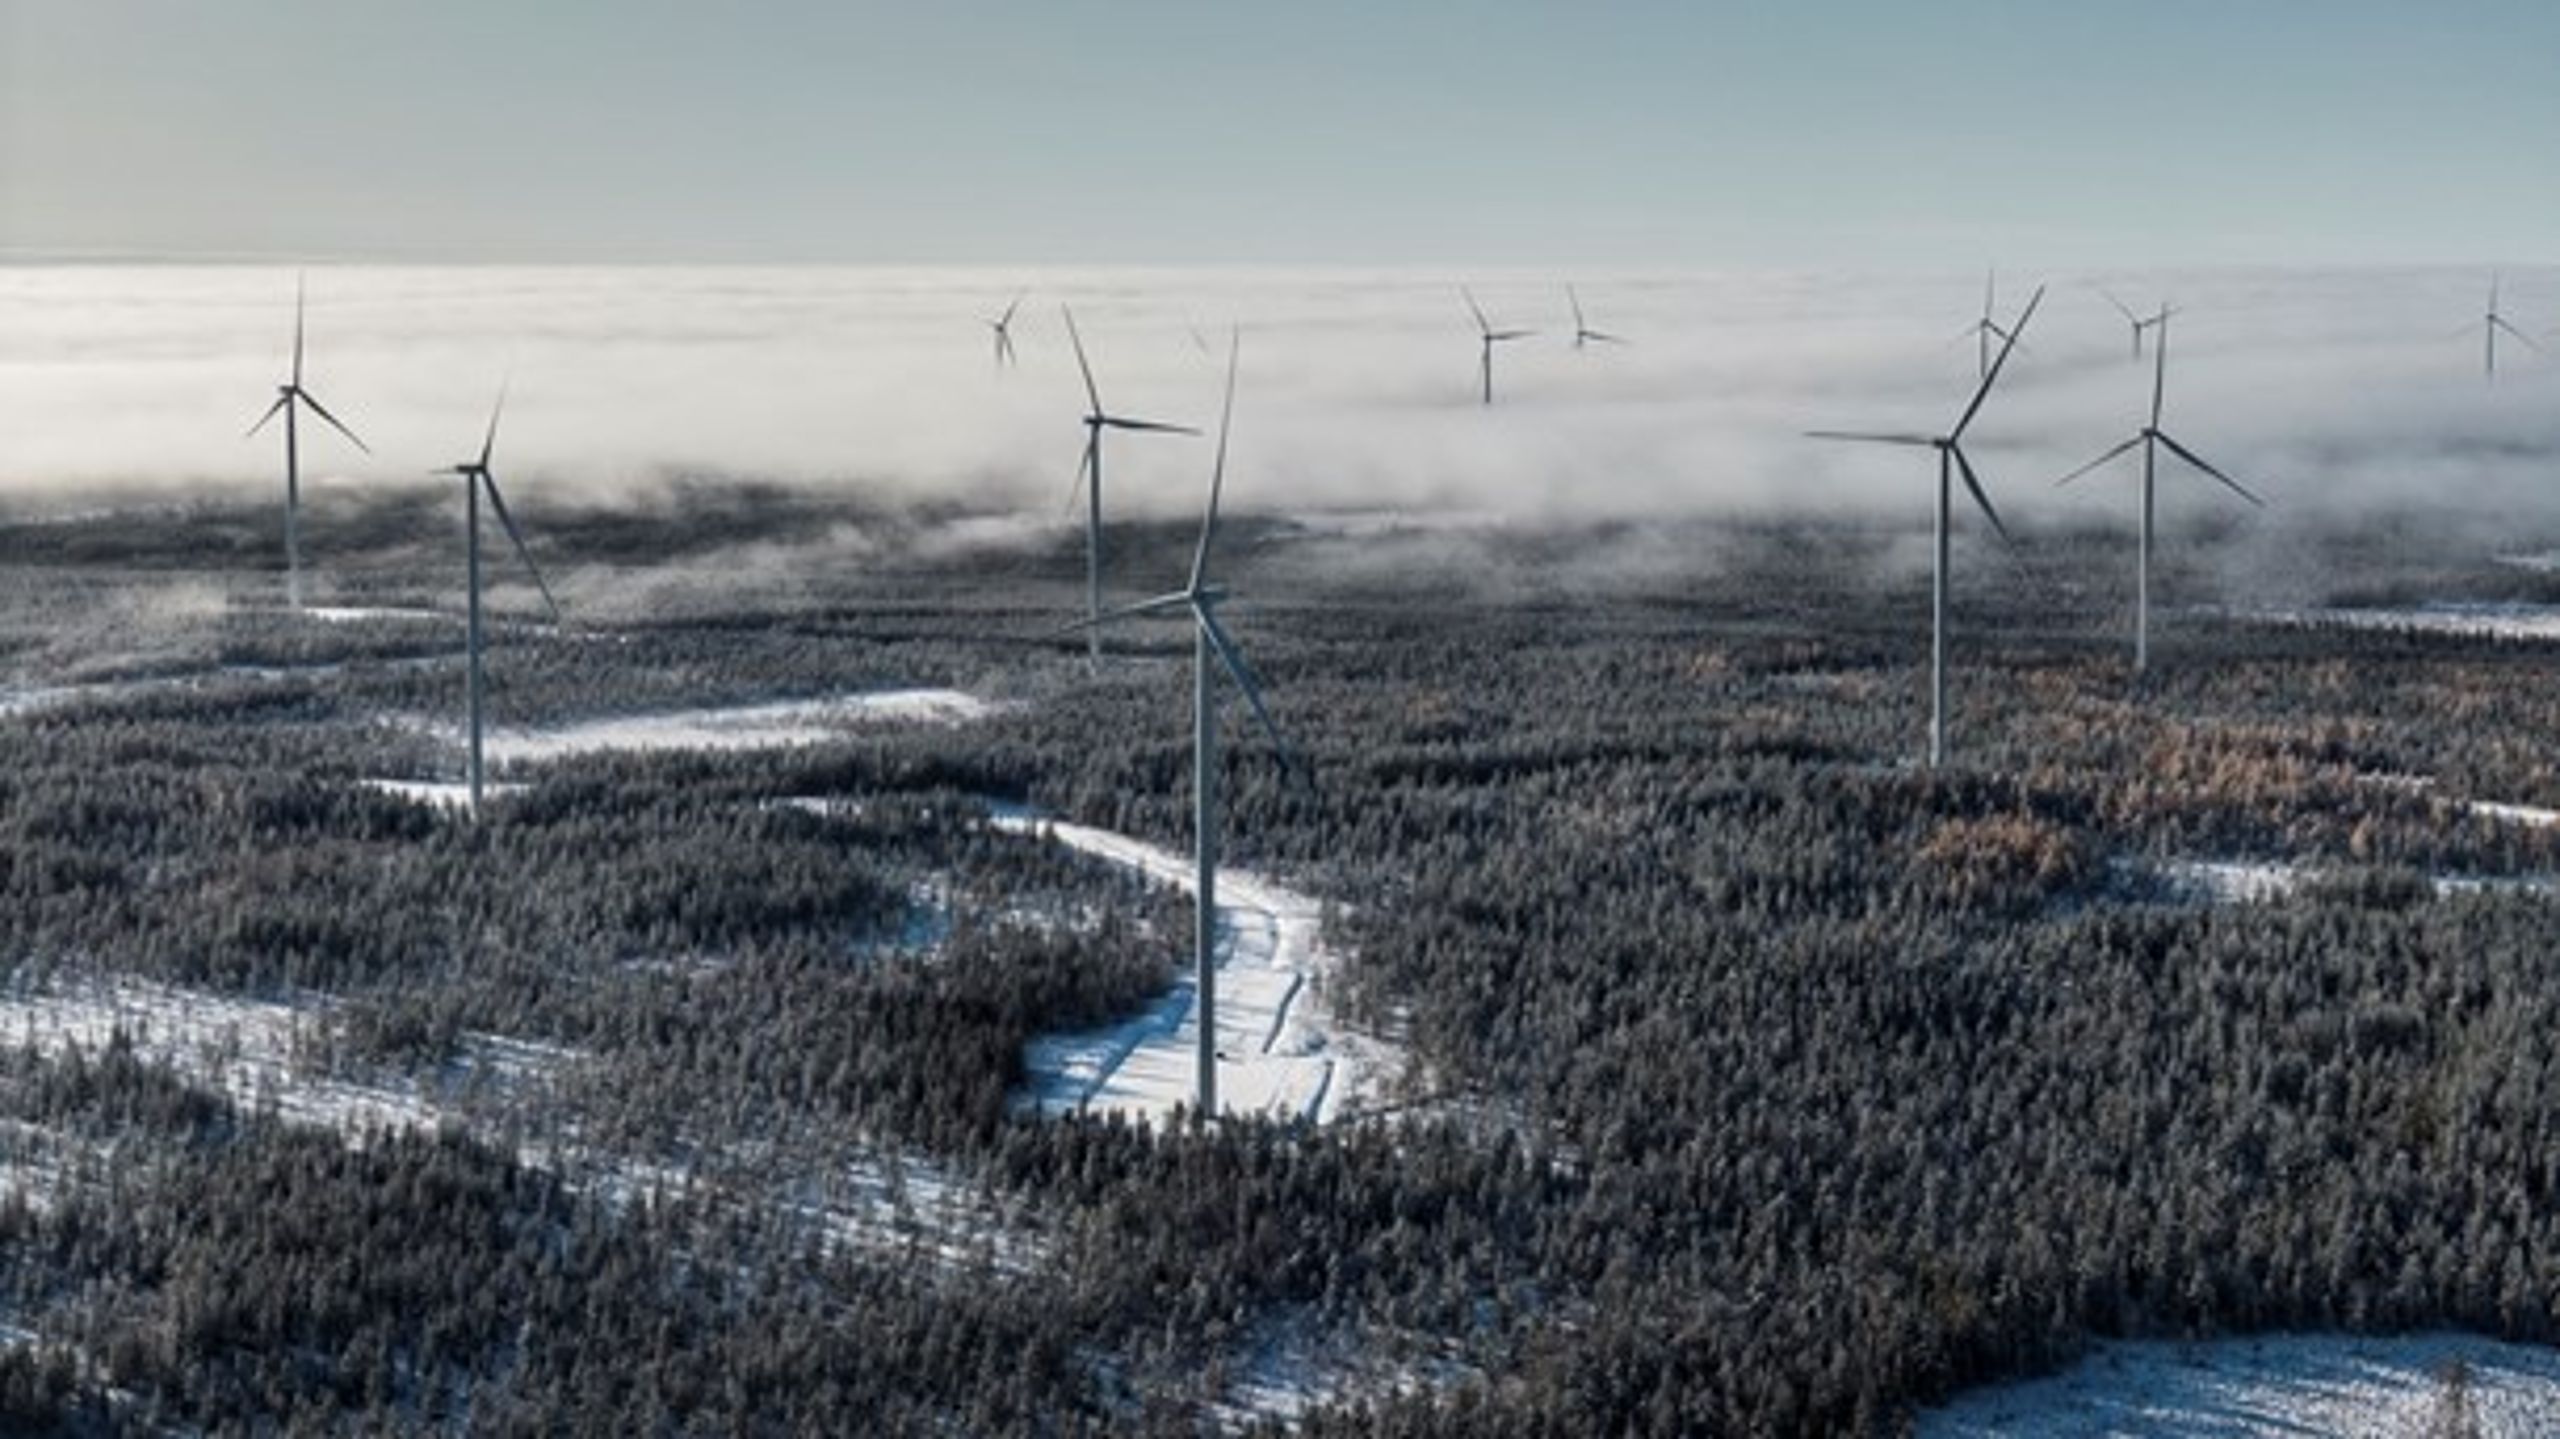 Markbygden utanför Piteå, Europas största vindkraftspark på land, stötte inte på patrull i prövningsprocessen. <br>